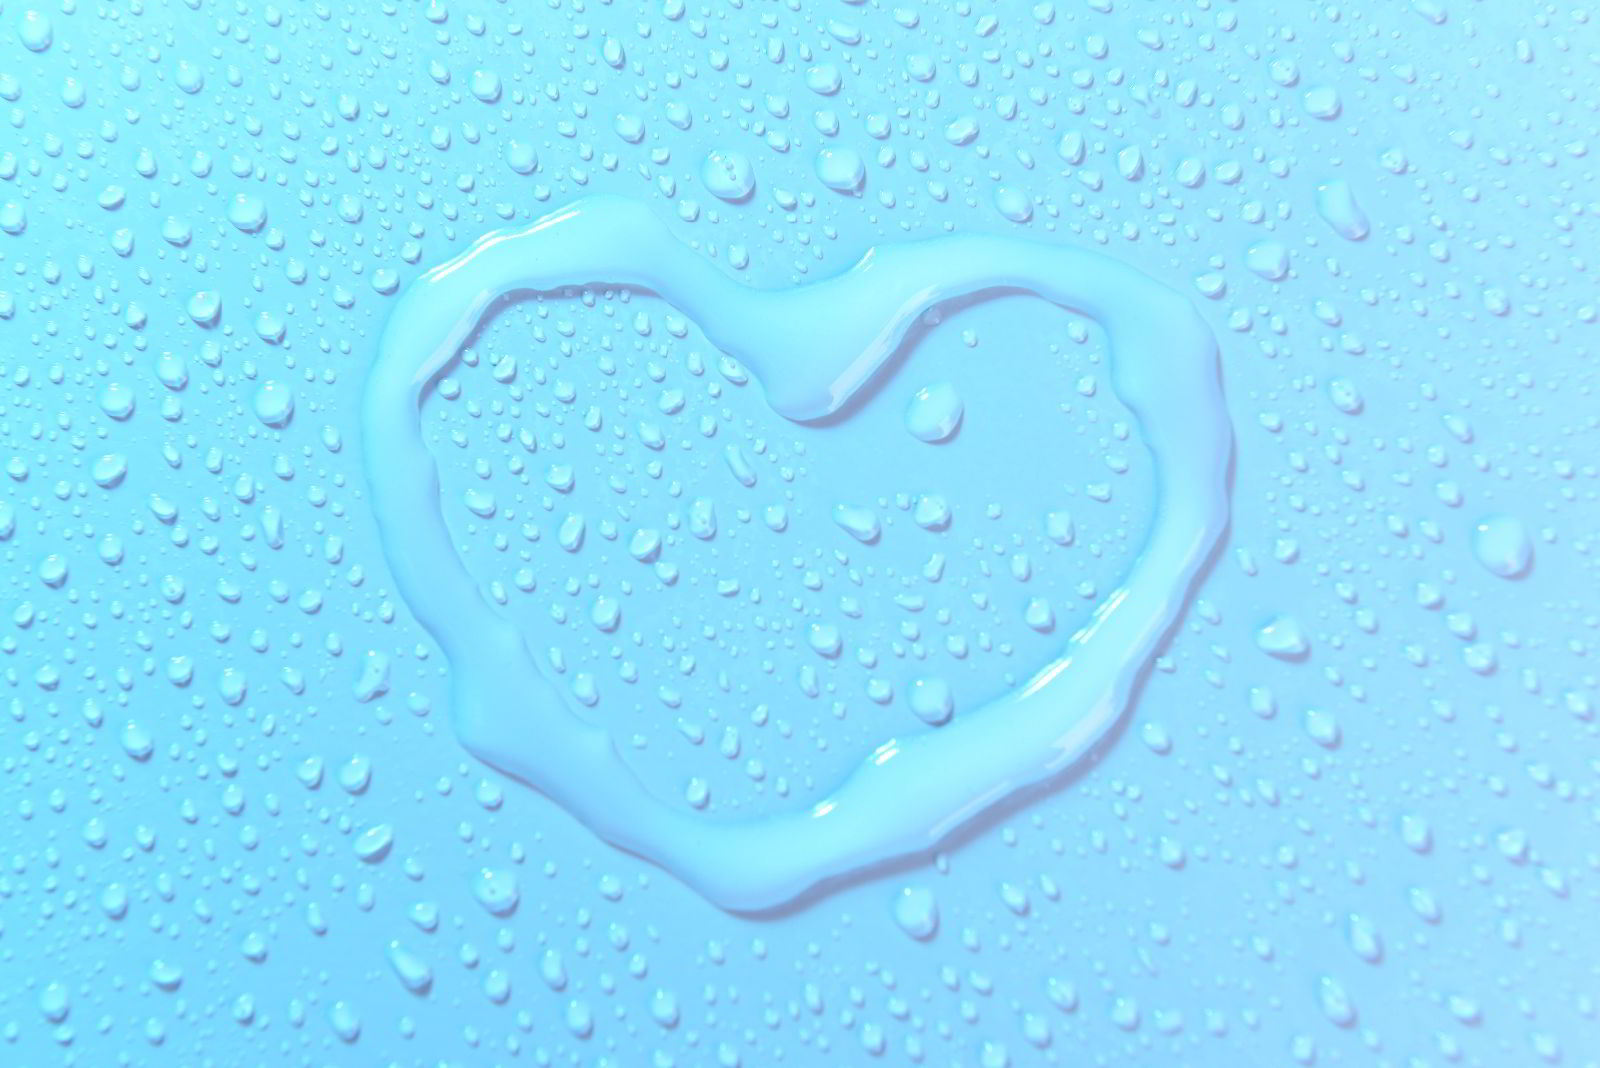 Un corazón dibujado con agua sobre una superficie azul